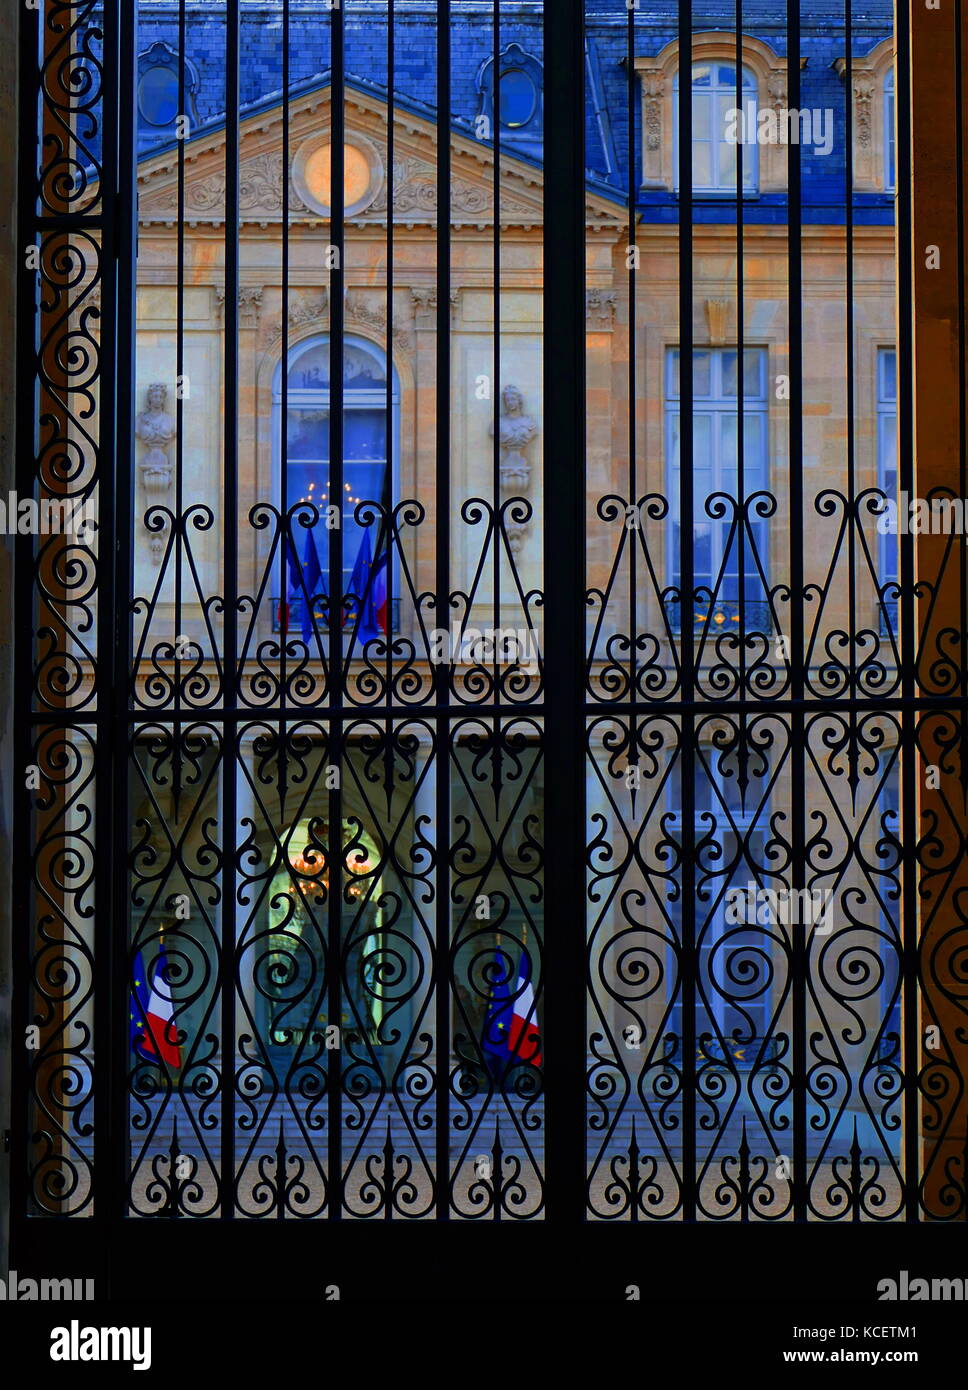 Der Elysée-palast (Palais de l'Élysée) ist die offizielle Residenz des Präsidenten der Französischen Republik seit 1848. Dating zum Anfang des 18. Jahrhunderts, enthält es das Amt des Präsidenten und der Treffpunkt der Ministerrat. Es liegt in der Nähe der Champs-Élysées im 8. arrondissement von Paris. Stockfoto